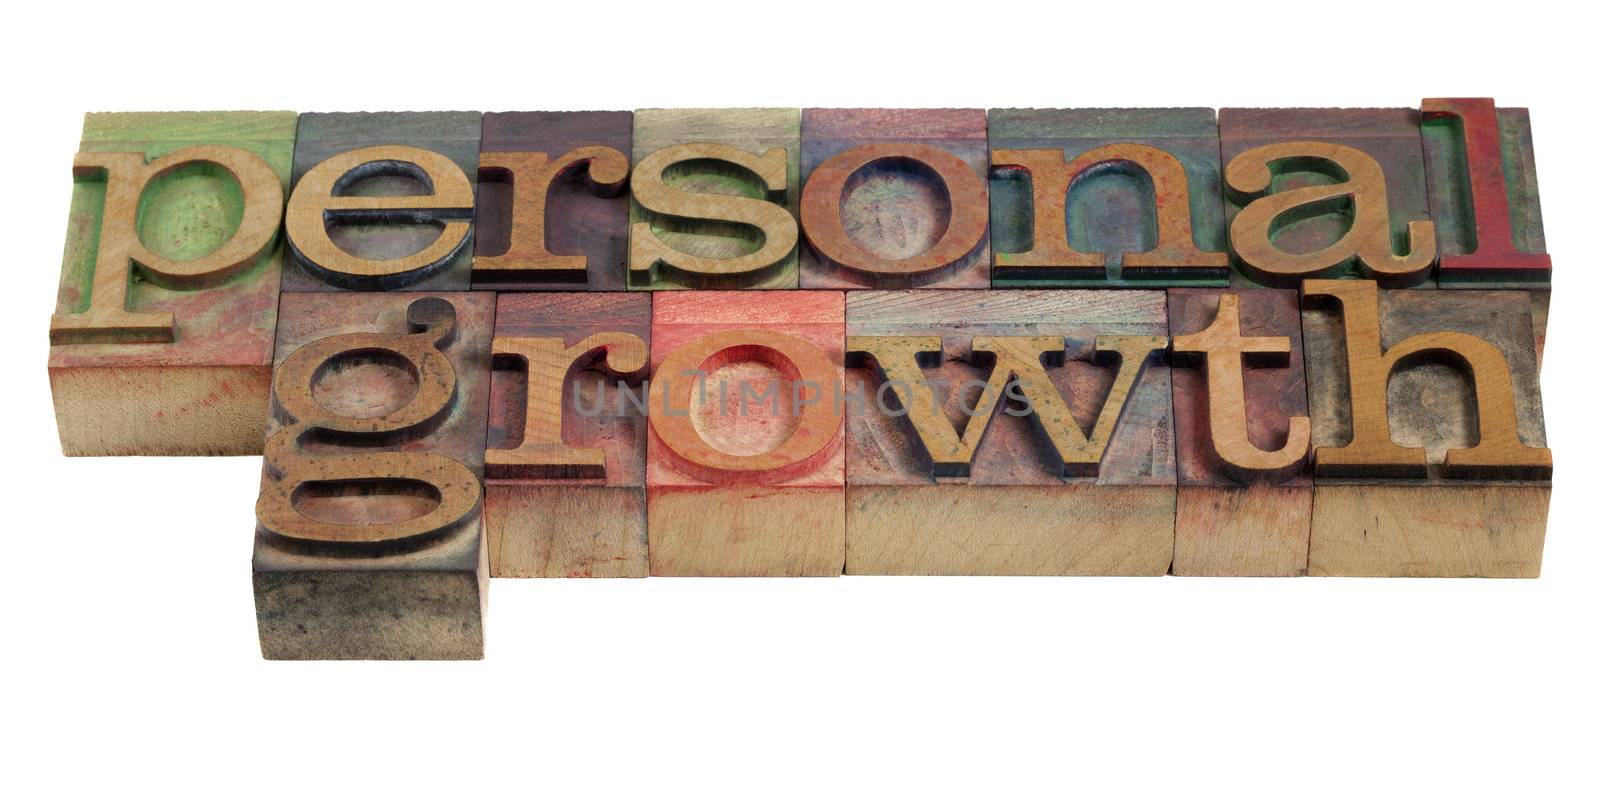 personal growth - words in vintage wooden letterpress printing blocks